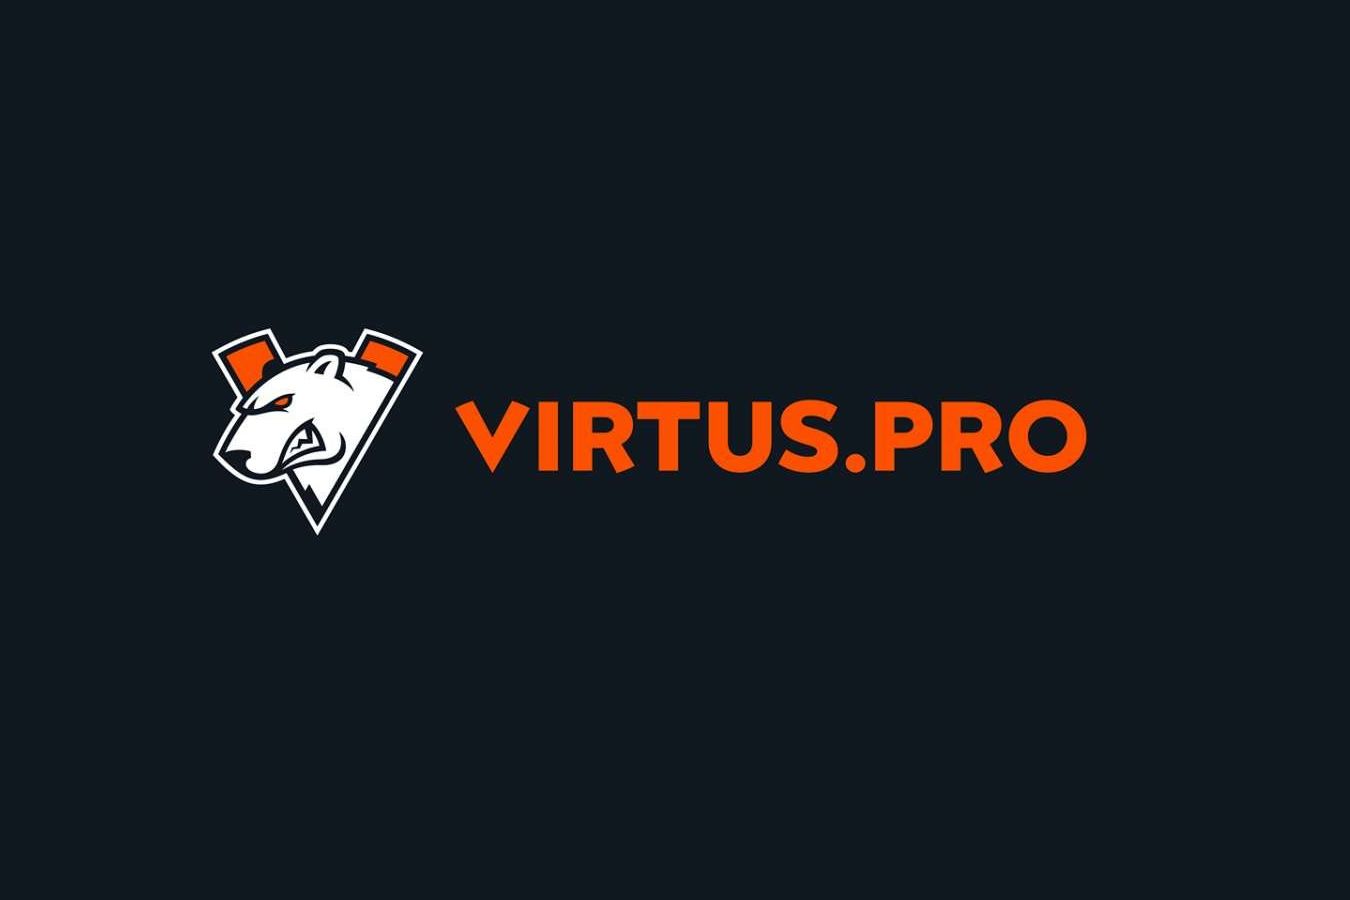 Virtus pro blacklist